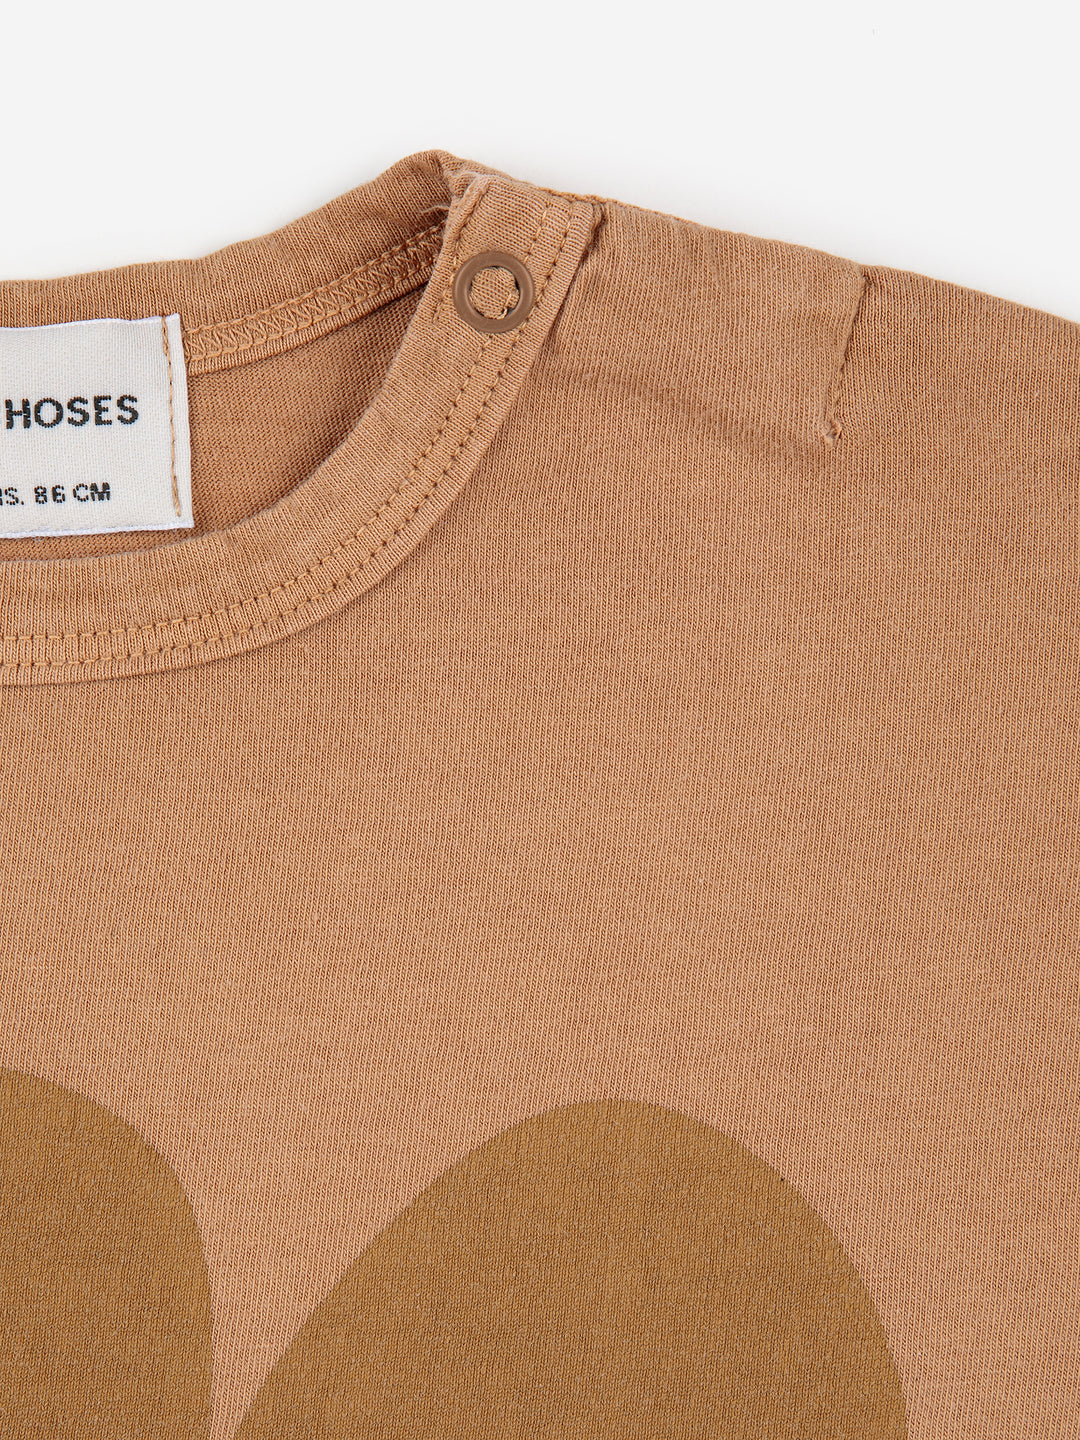 T-shirt manches longues pour bébé en coton biologique brun avec imprimé souri